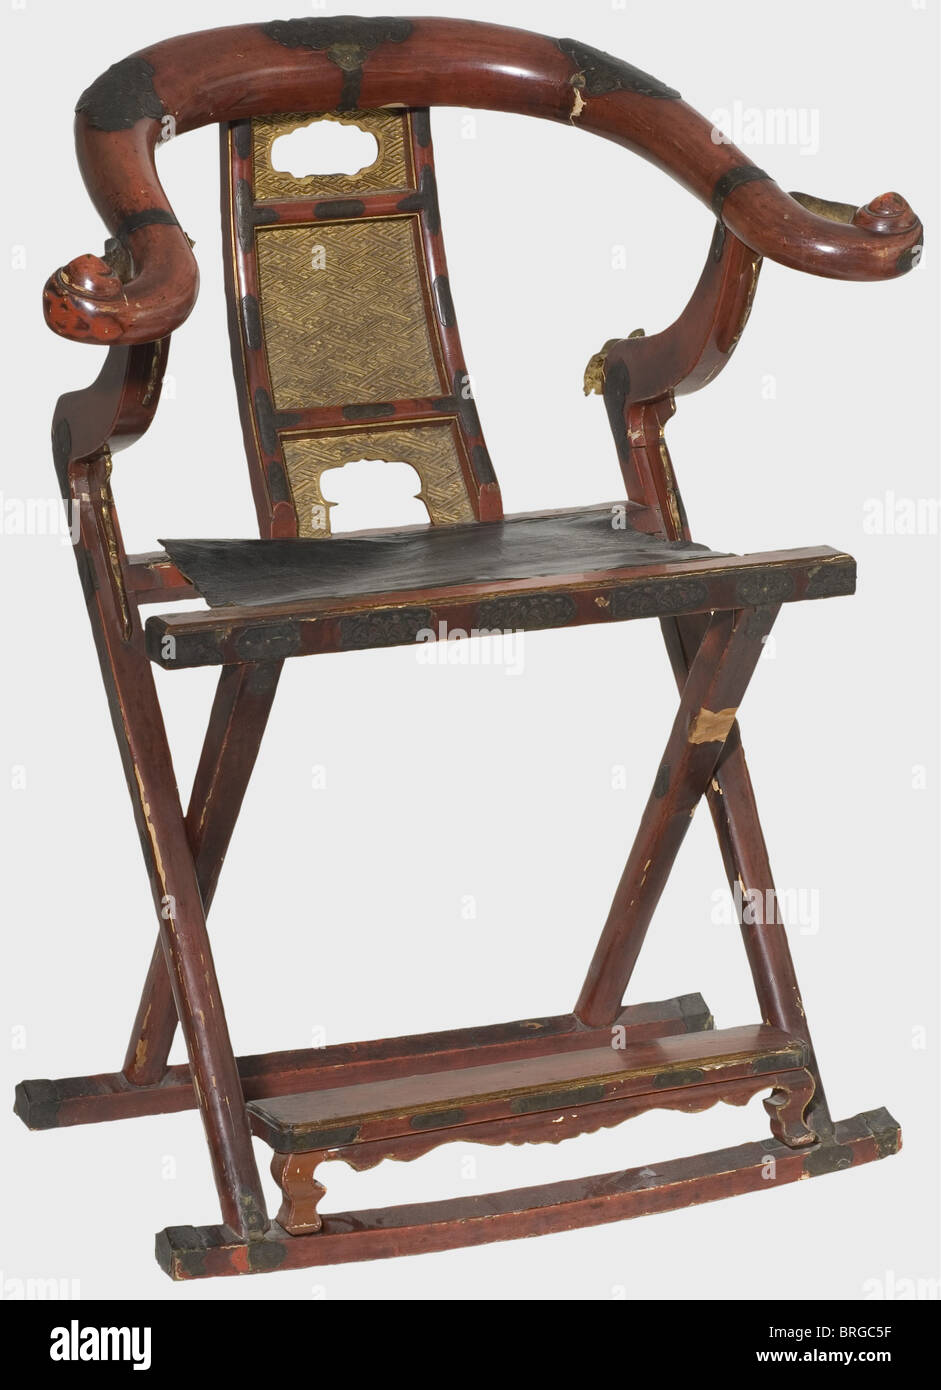 Une chaise pliante japonaise (kyokuroku), bois laqué rouge du XIXe siècle,  dossier doré sculpté avec des motifs swastika, siège en cuir noir,  garnitures en laiton gravées. Imperfections et dommages nécessitant une  restauration.